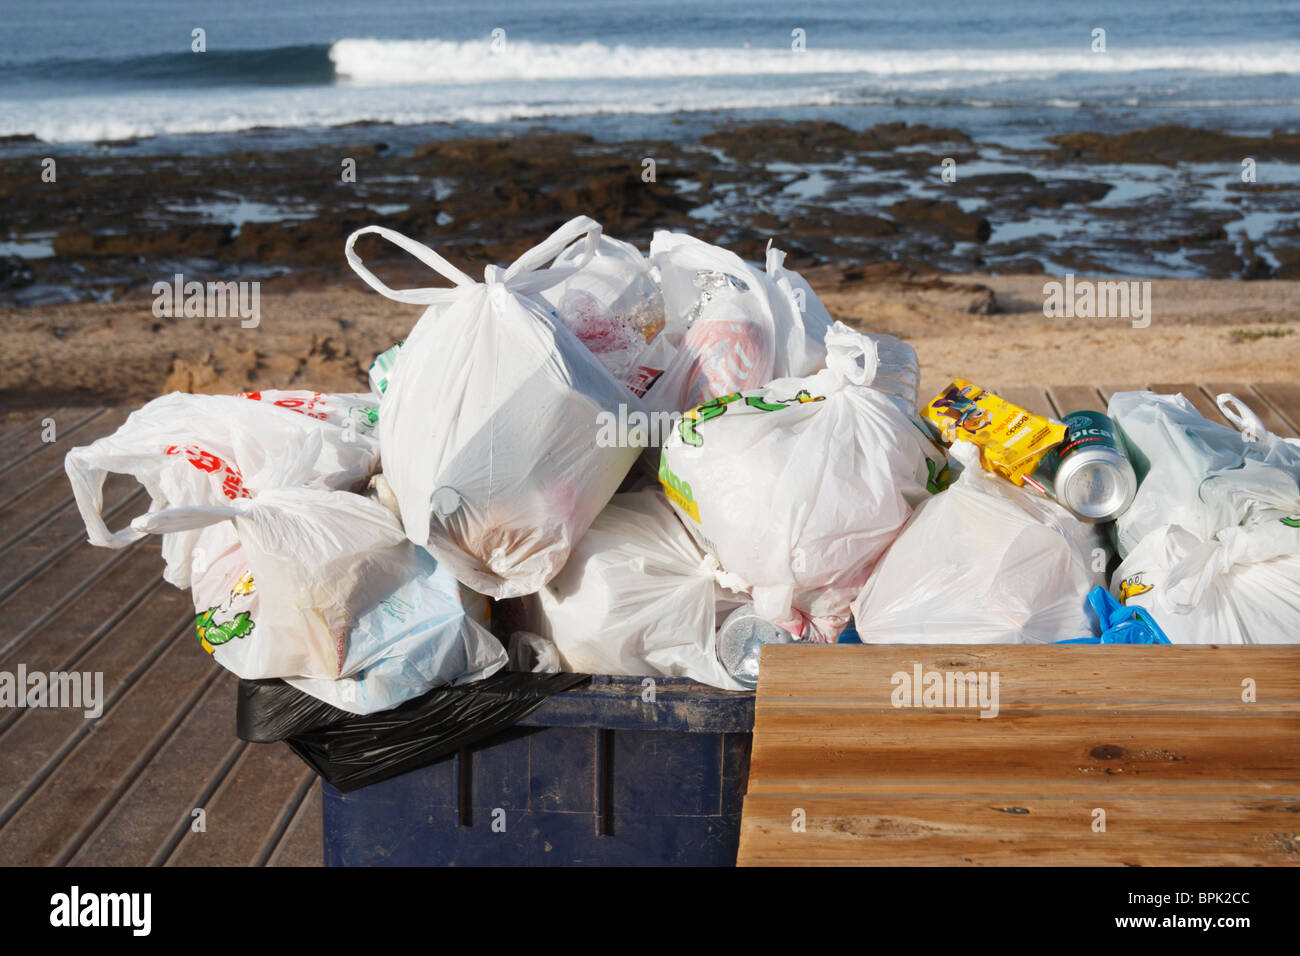 Overflowing wheelie bin on beach in Spain Stock Photo - Alamy